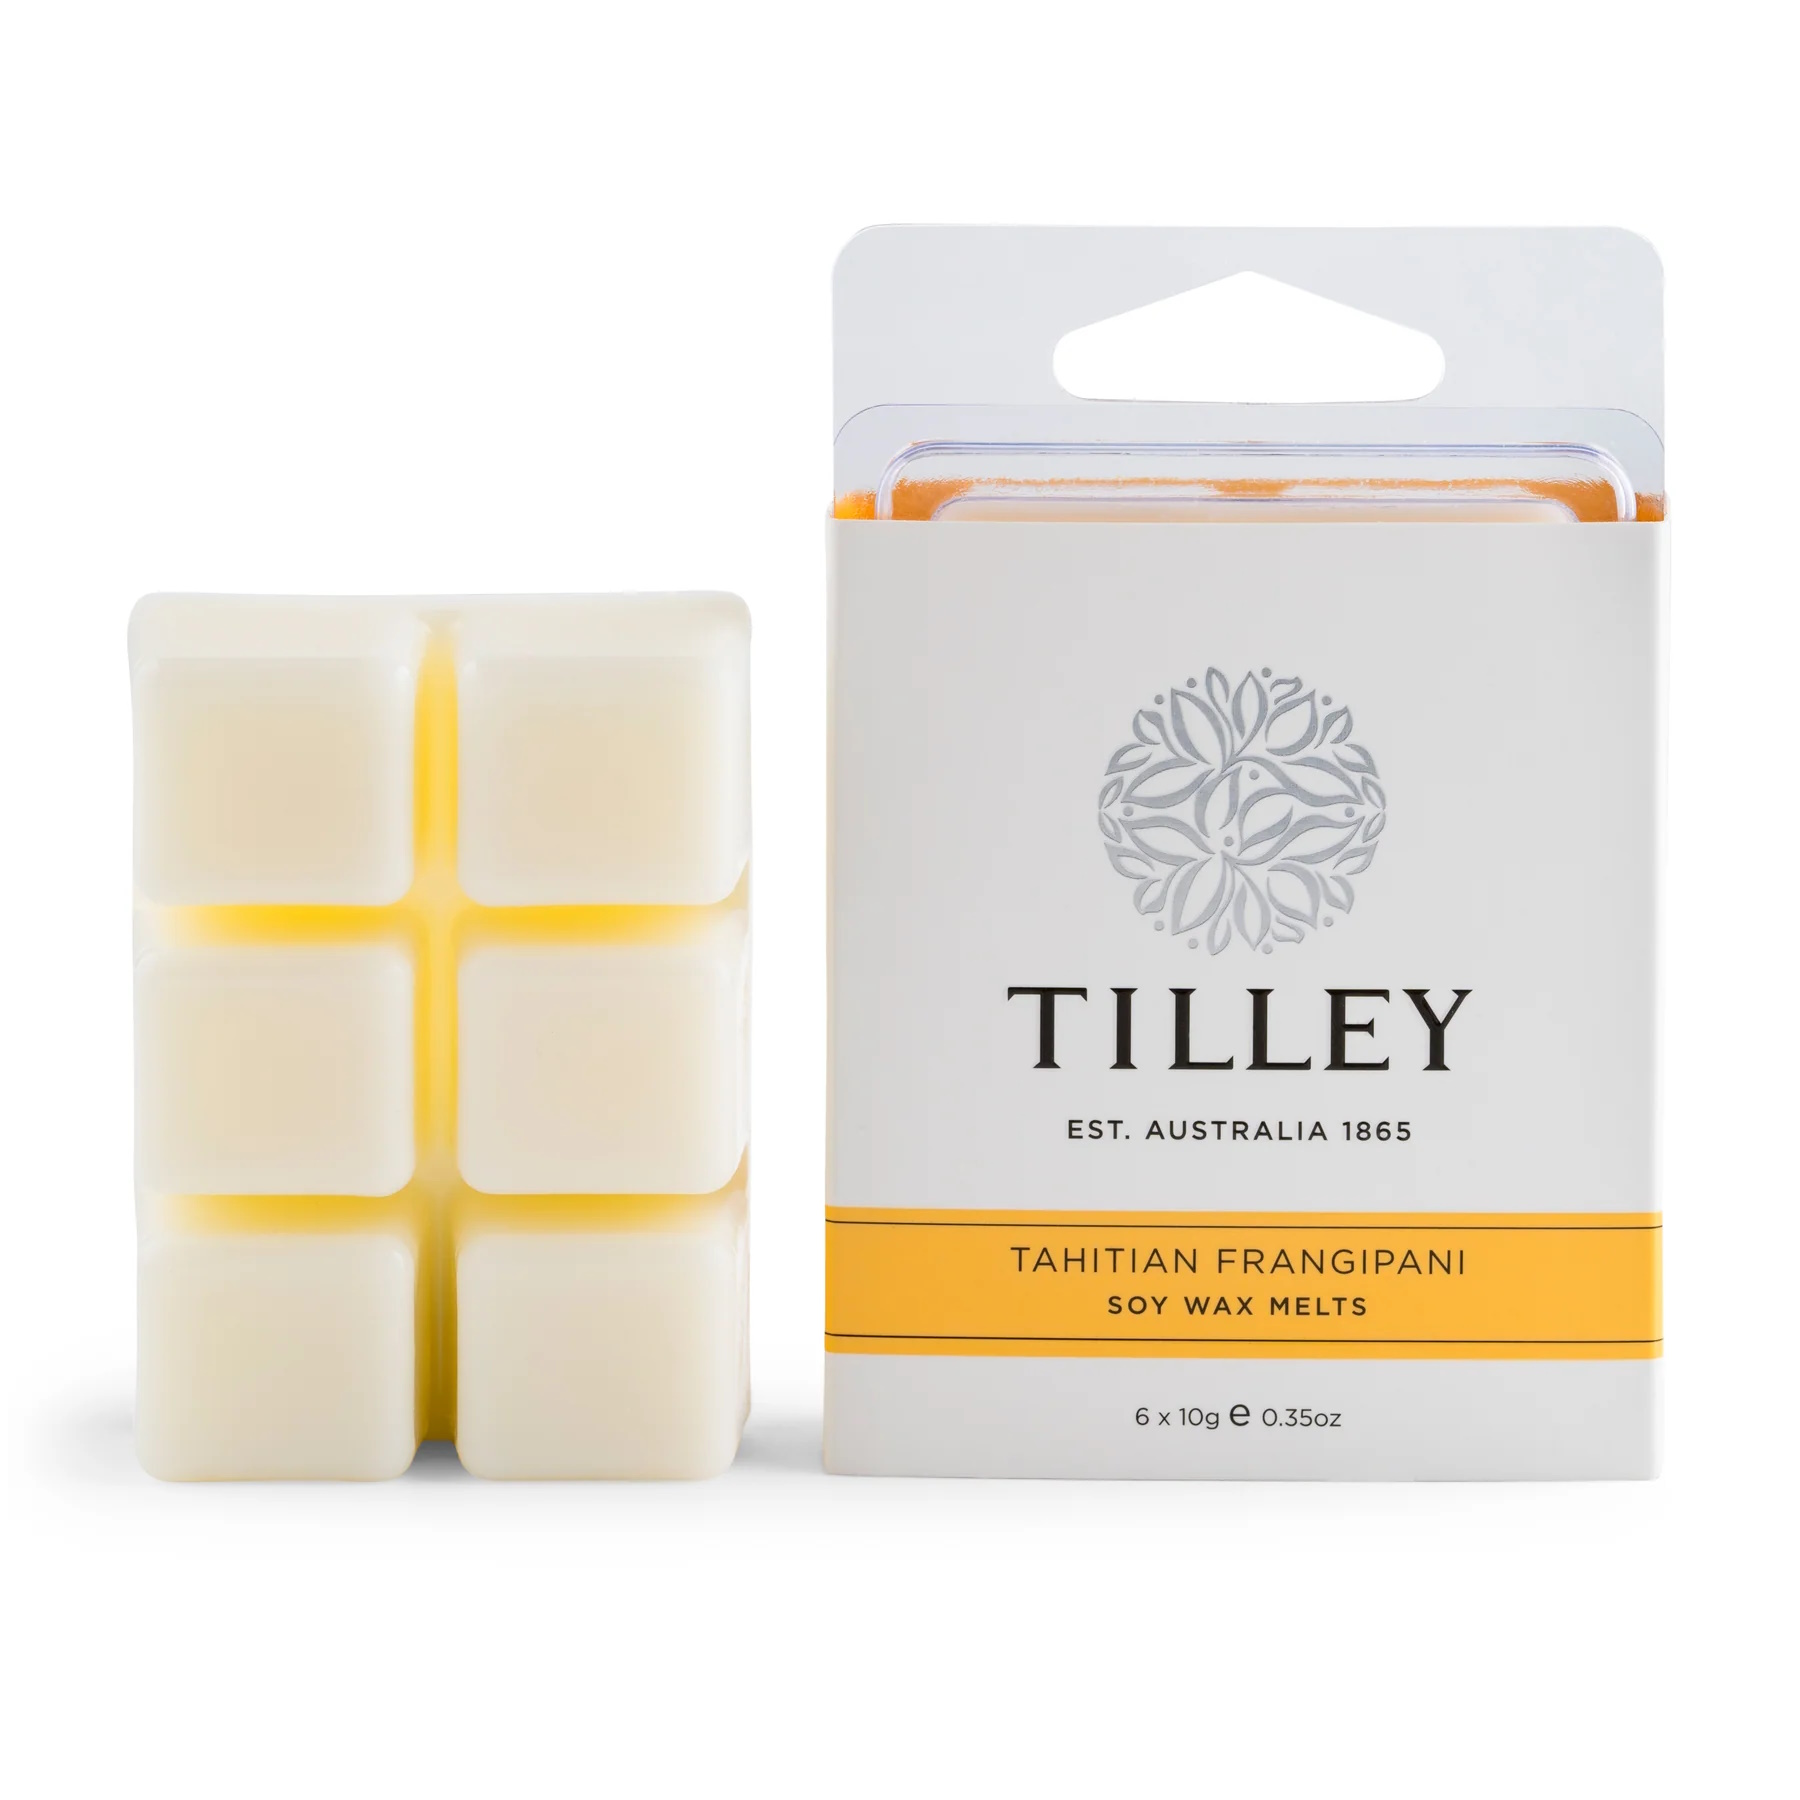 Tilley Tahitian Frangipani Square Soy Wax Melts 60g